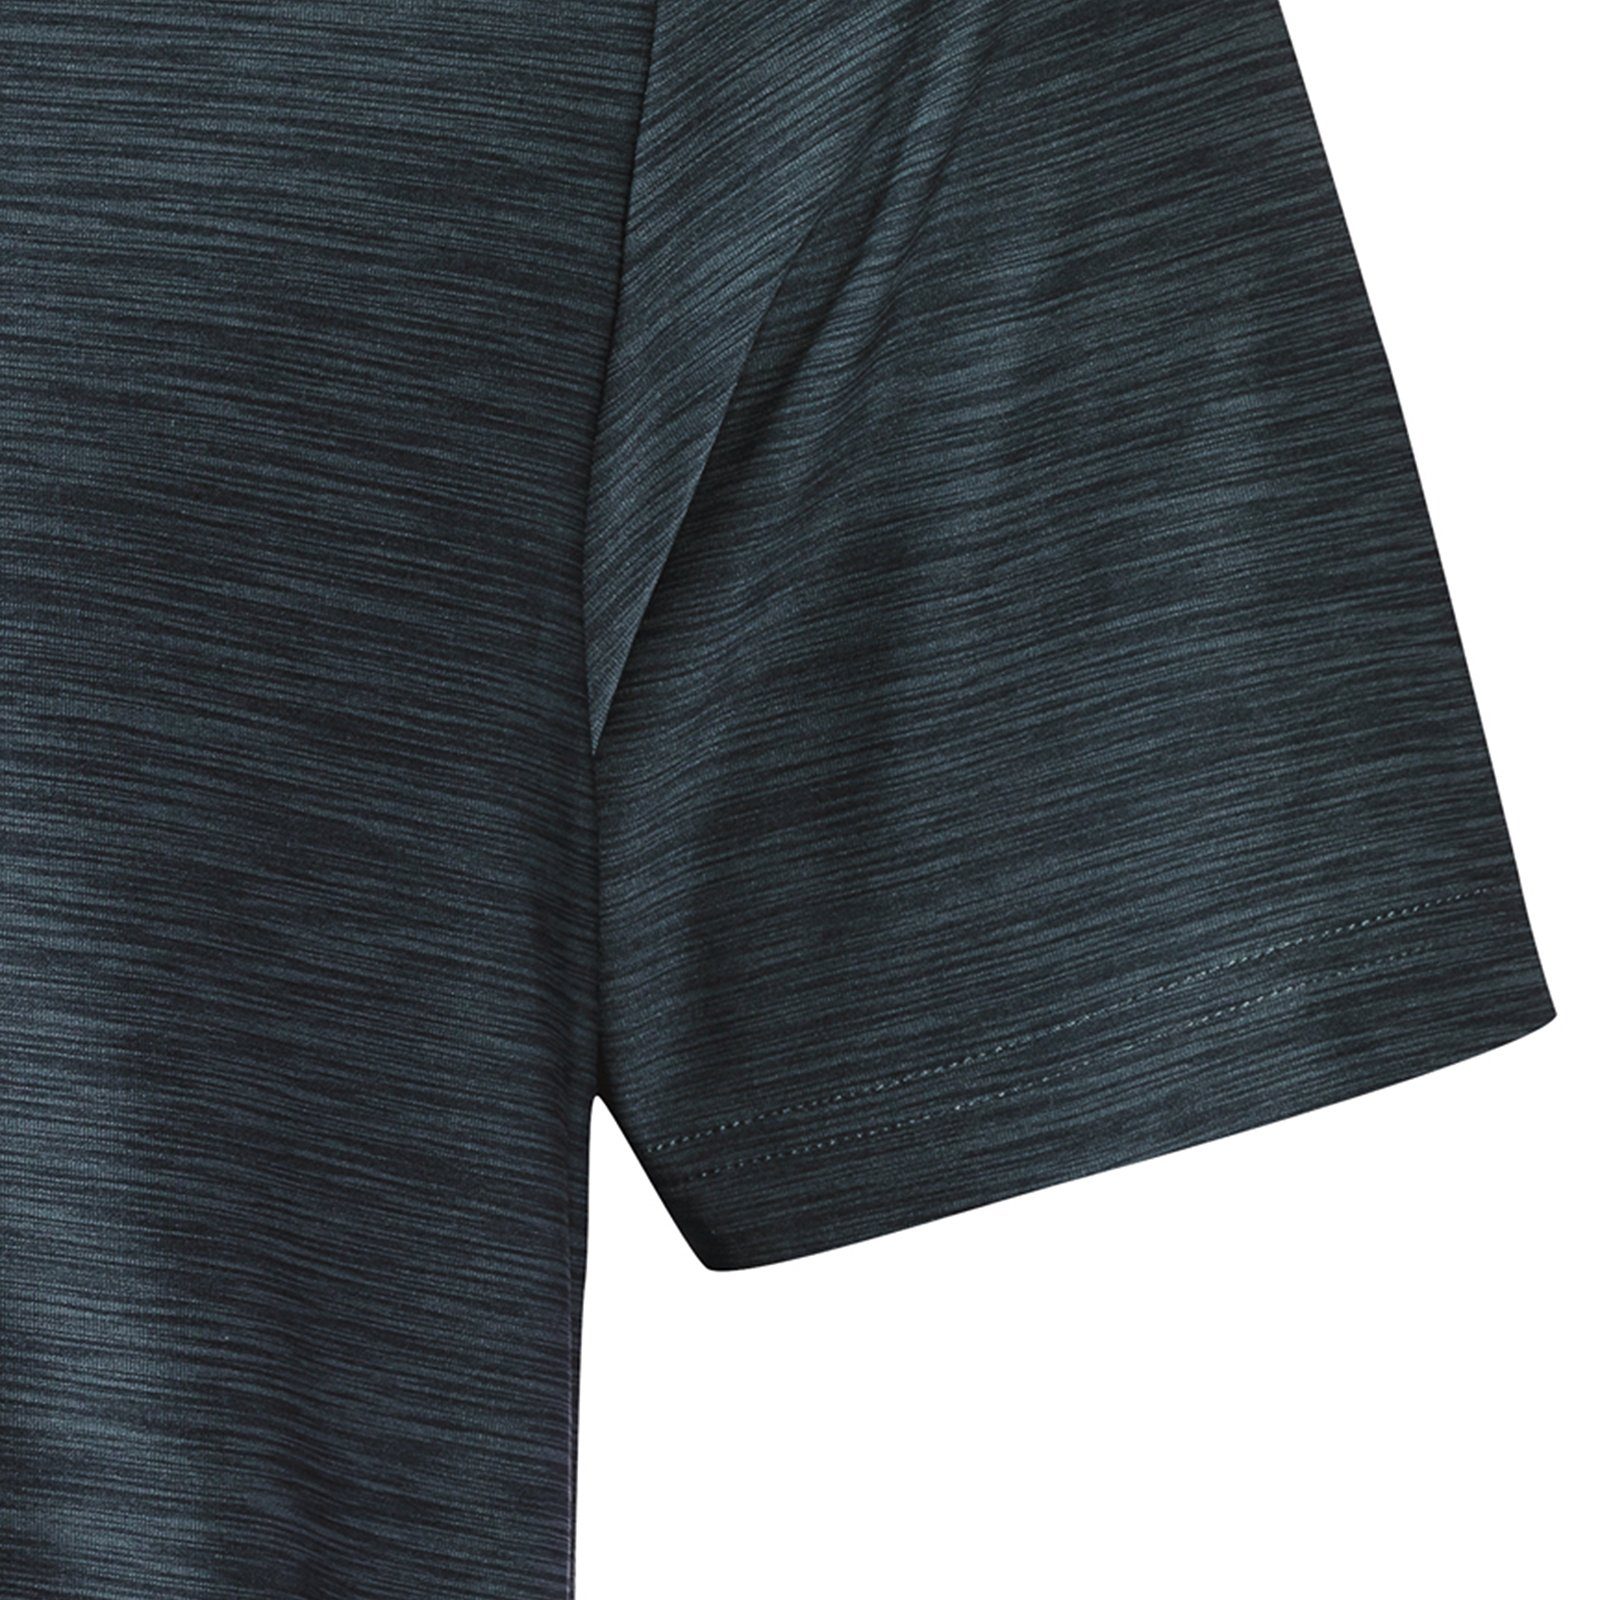 Joy Sportswear T-Shirt T-Shirt VITUS grey melange